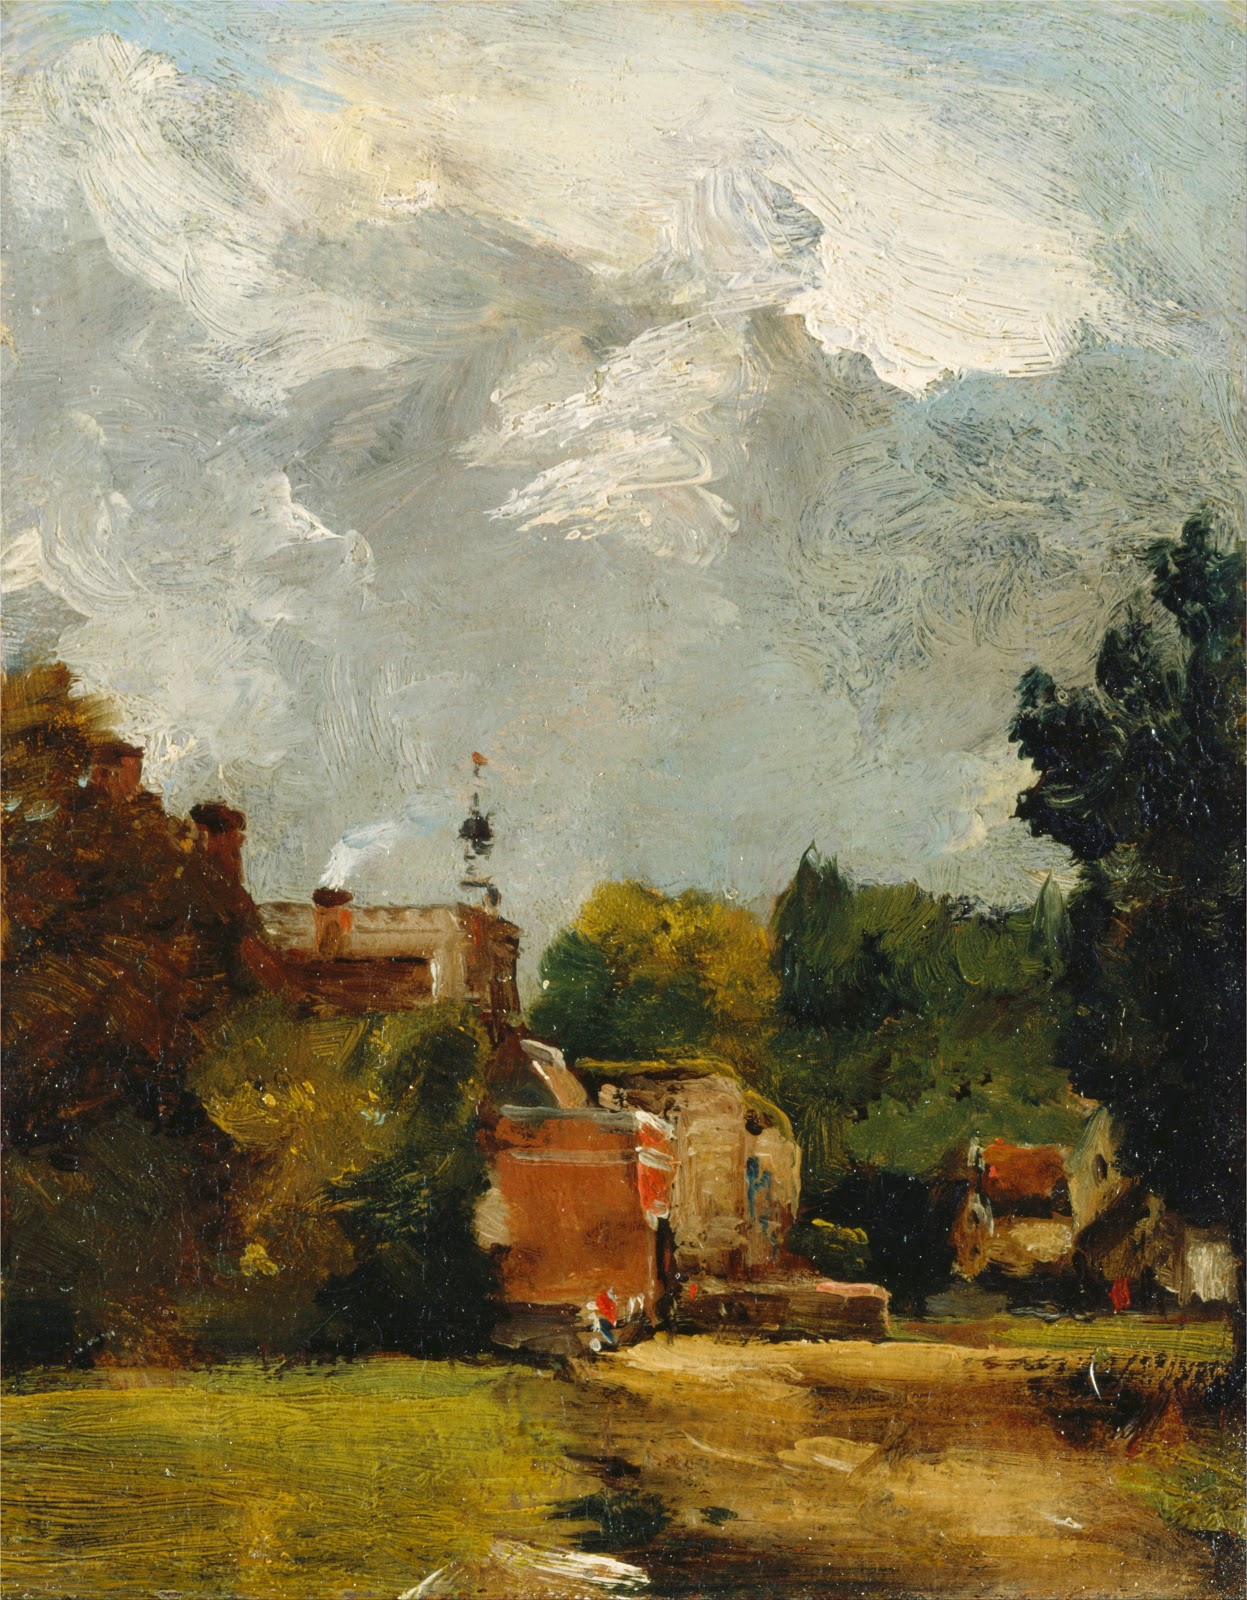 John+Constable-1776-1837 (52).jpg